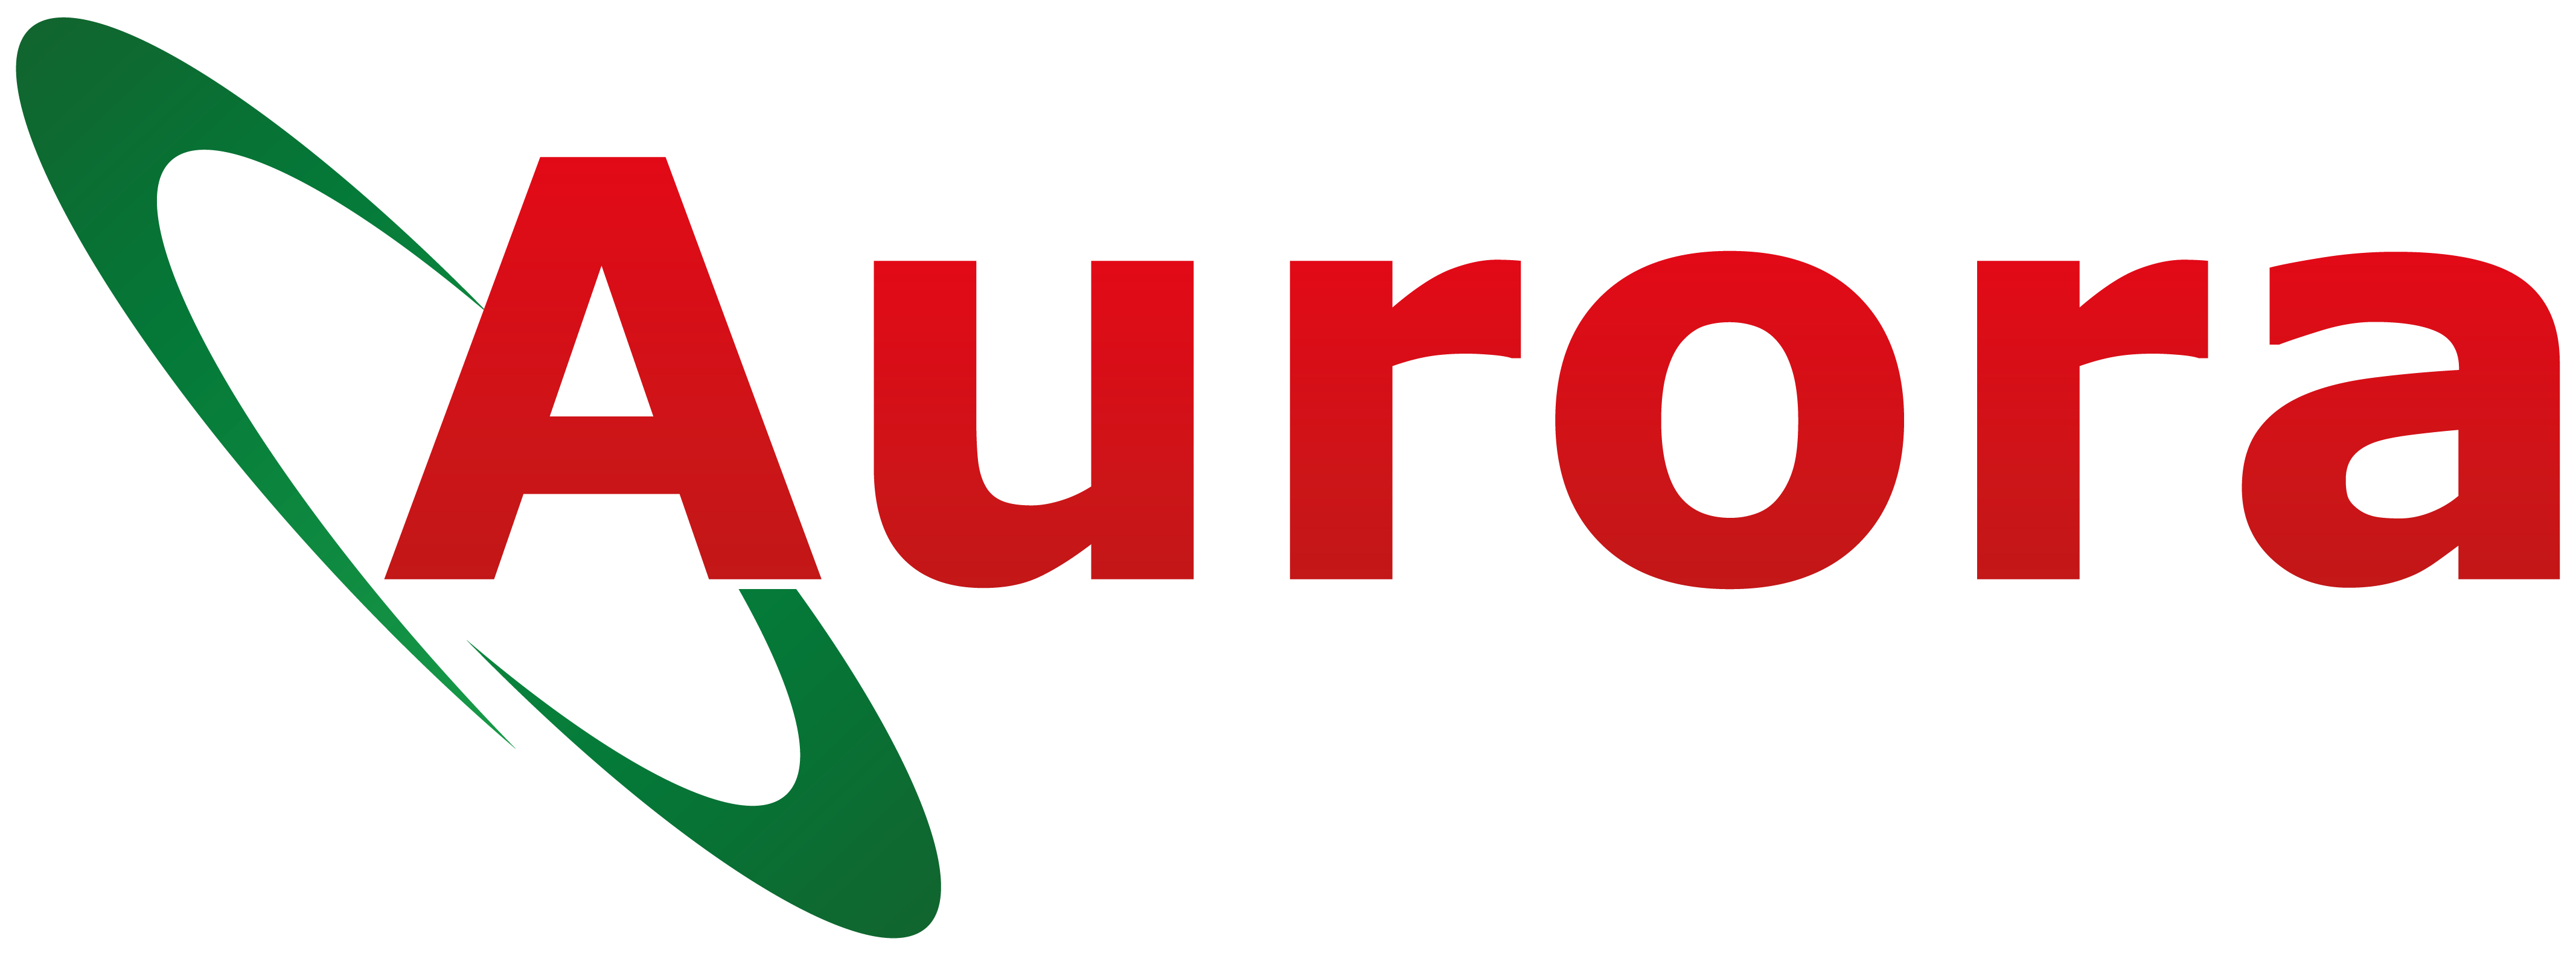 Aurora Tax Services Ltd